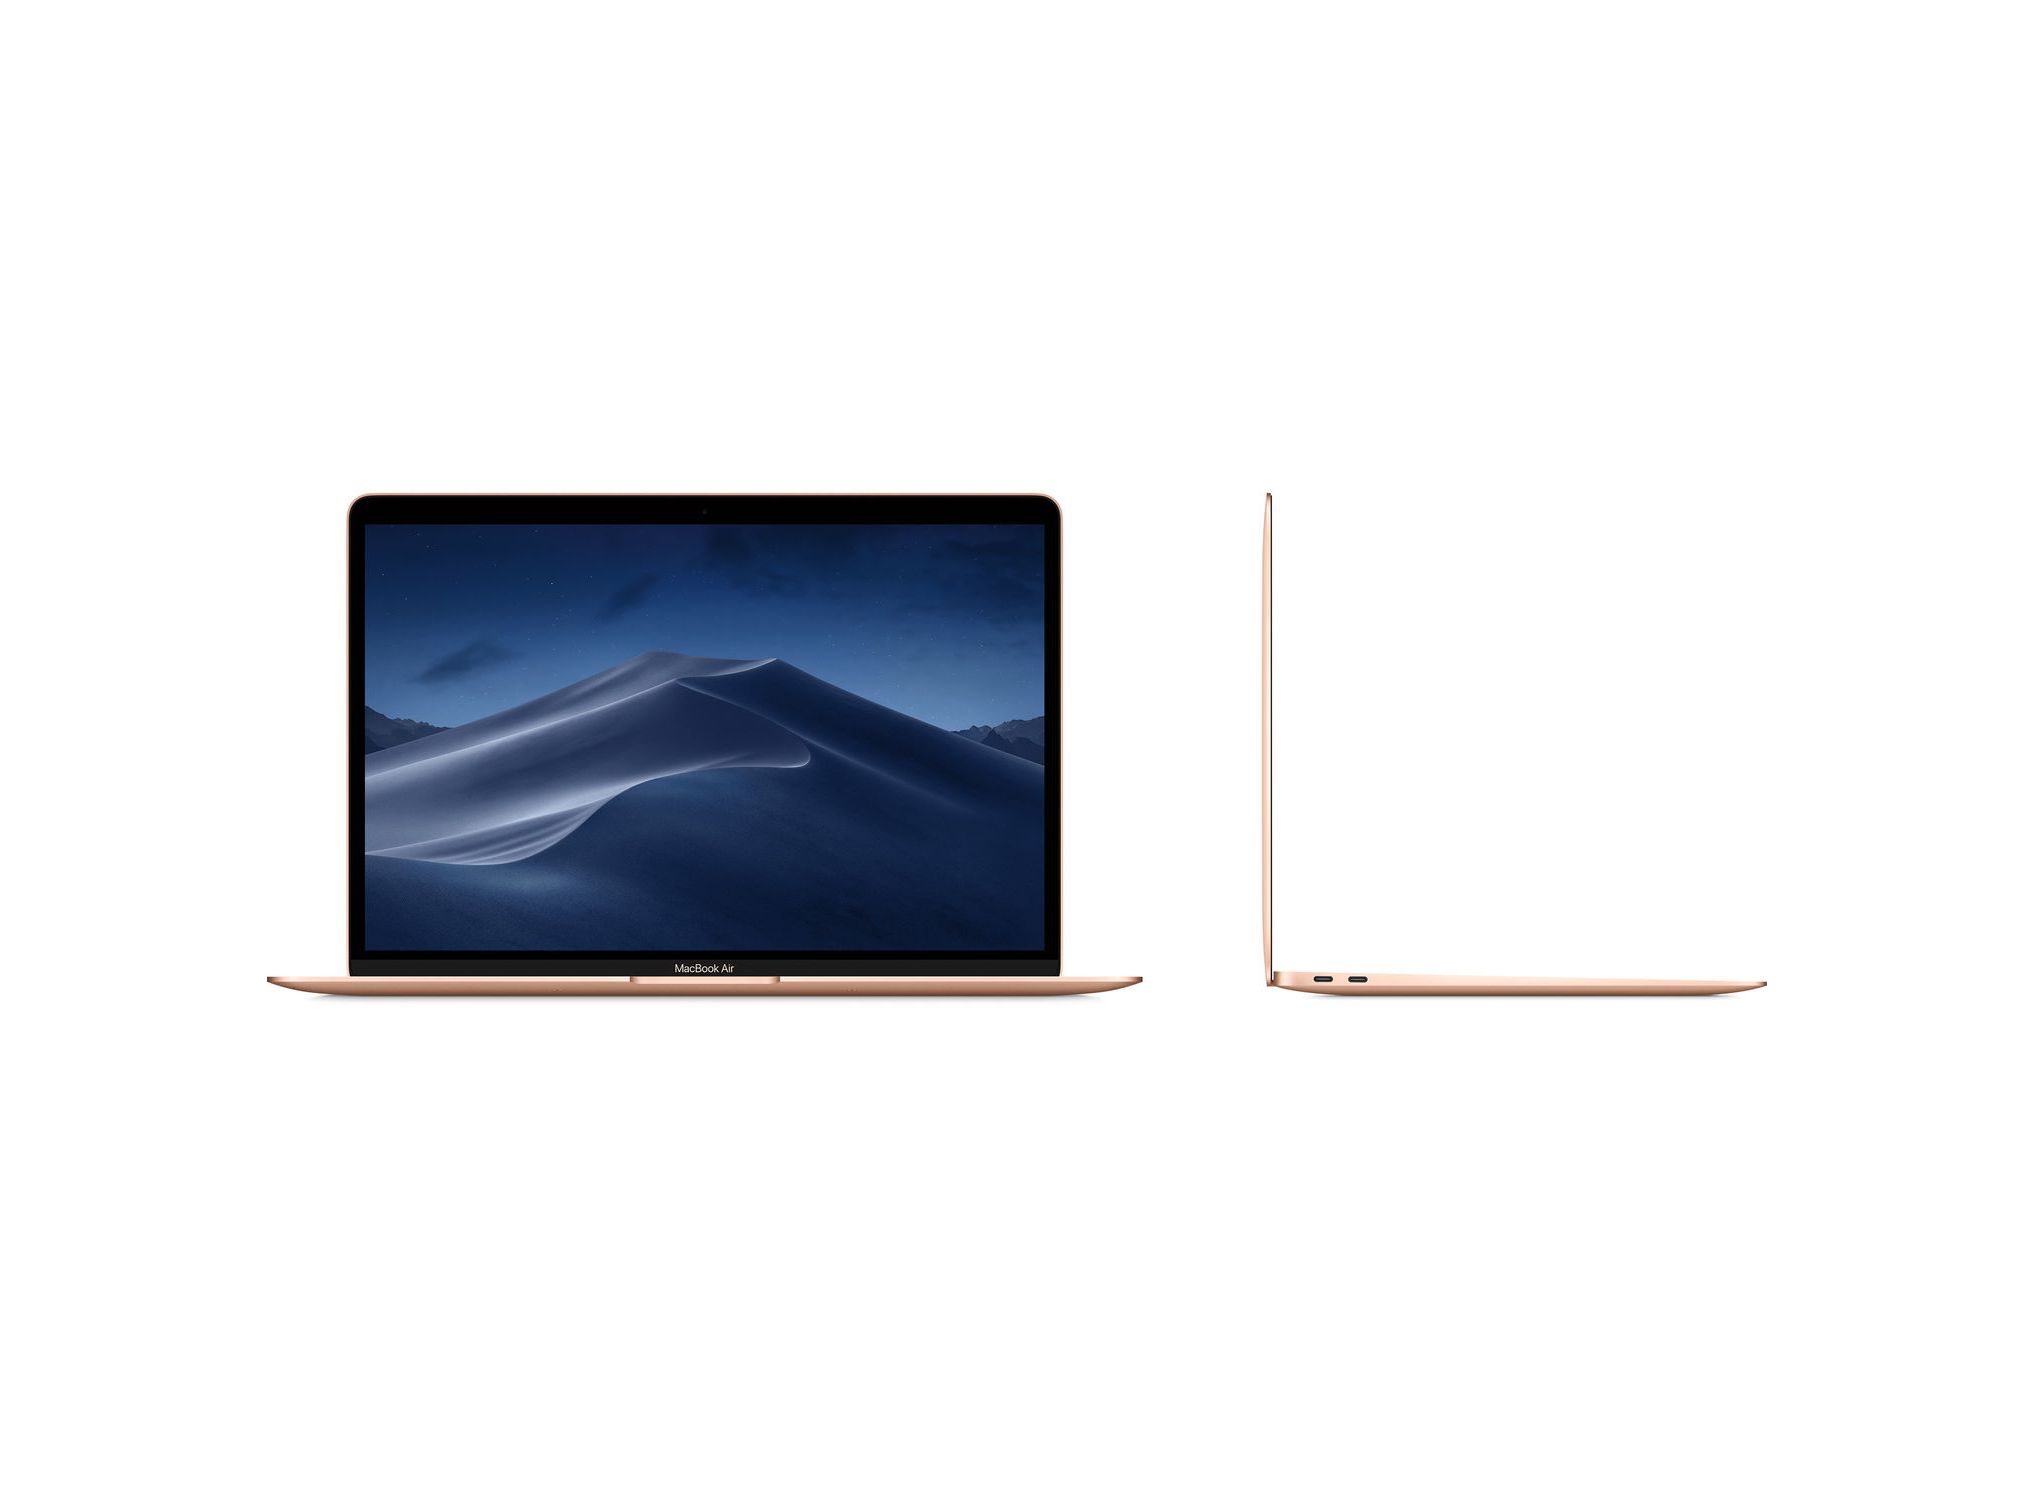 MVFH2 MacBook Air 2019 13-inch Core i5/ RAM 8GB/ SSD 128GB / Space 